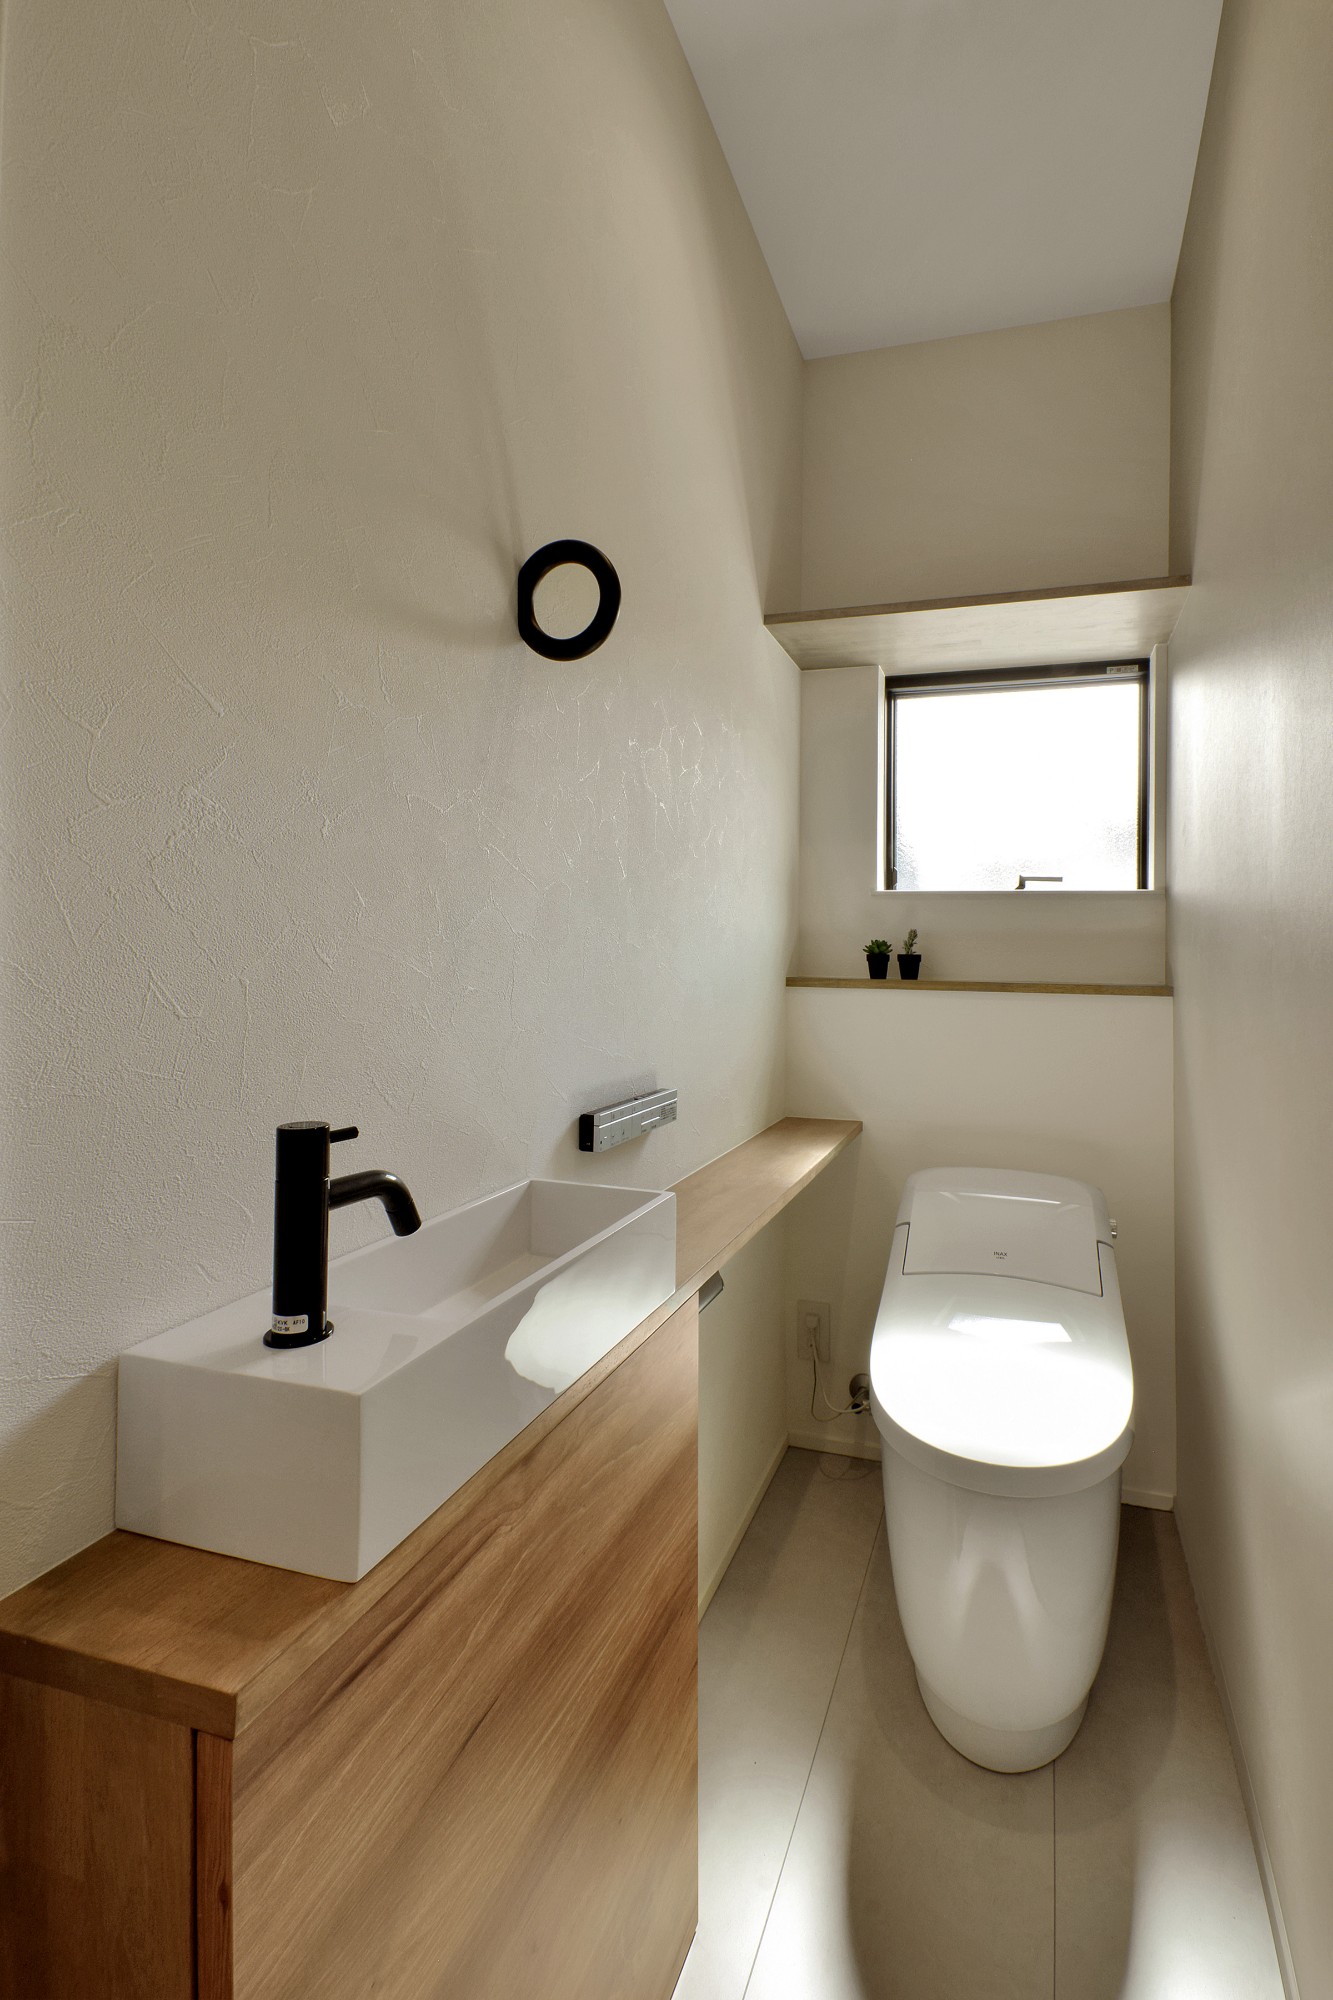 トイレには手洗い器を造作。木目のカウンターがナチュラルな空間を演出